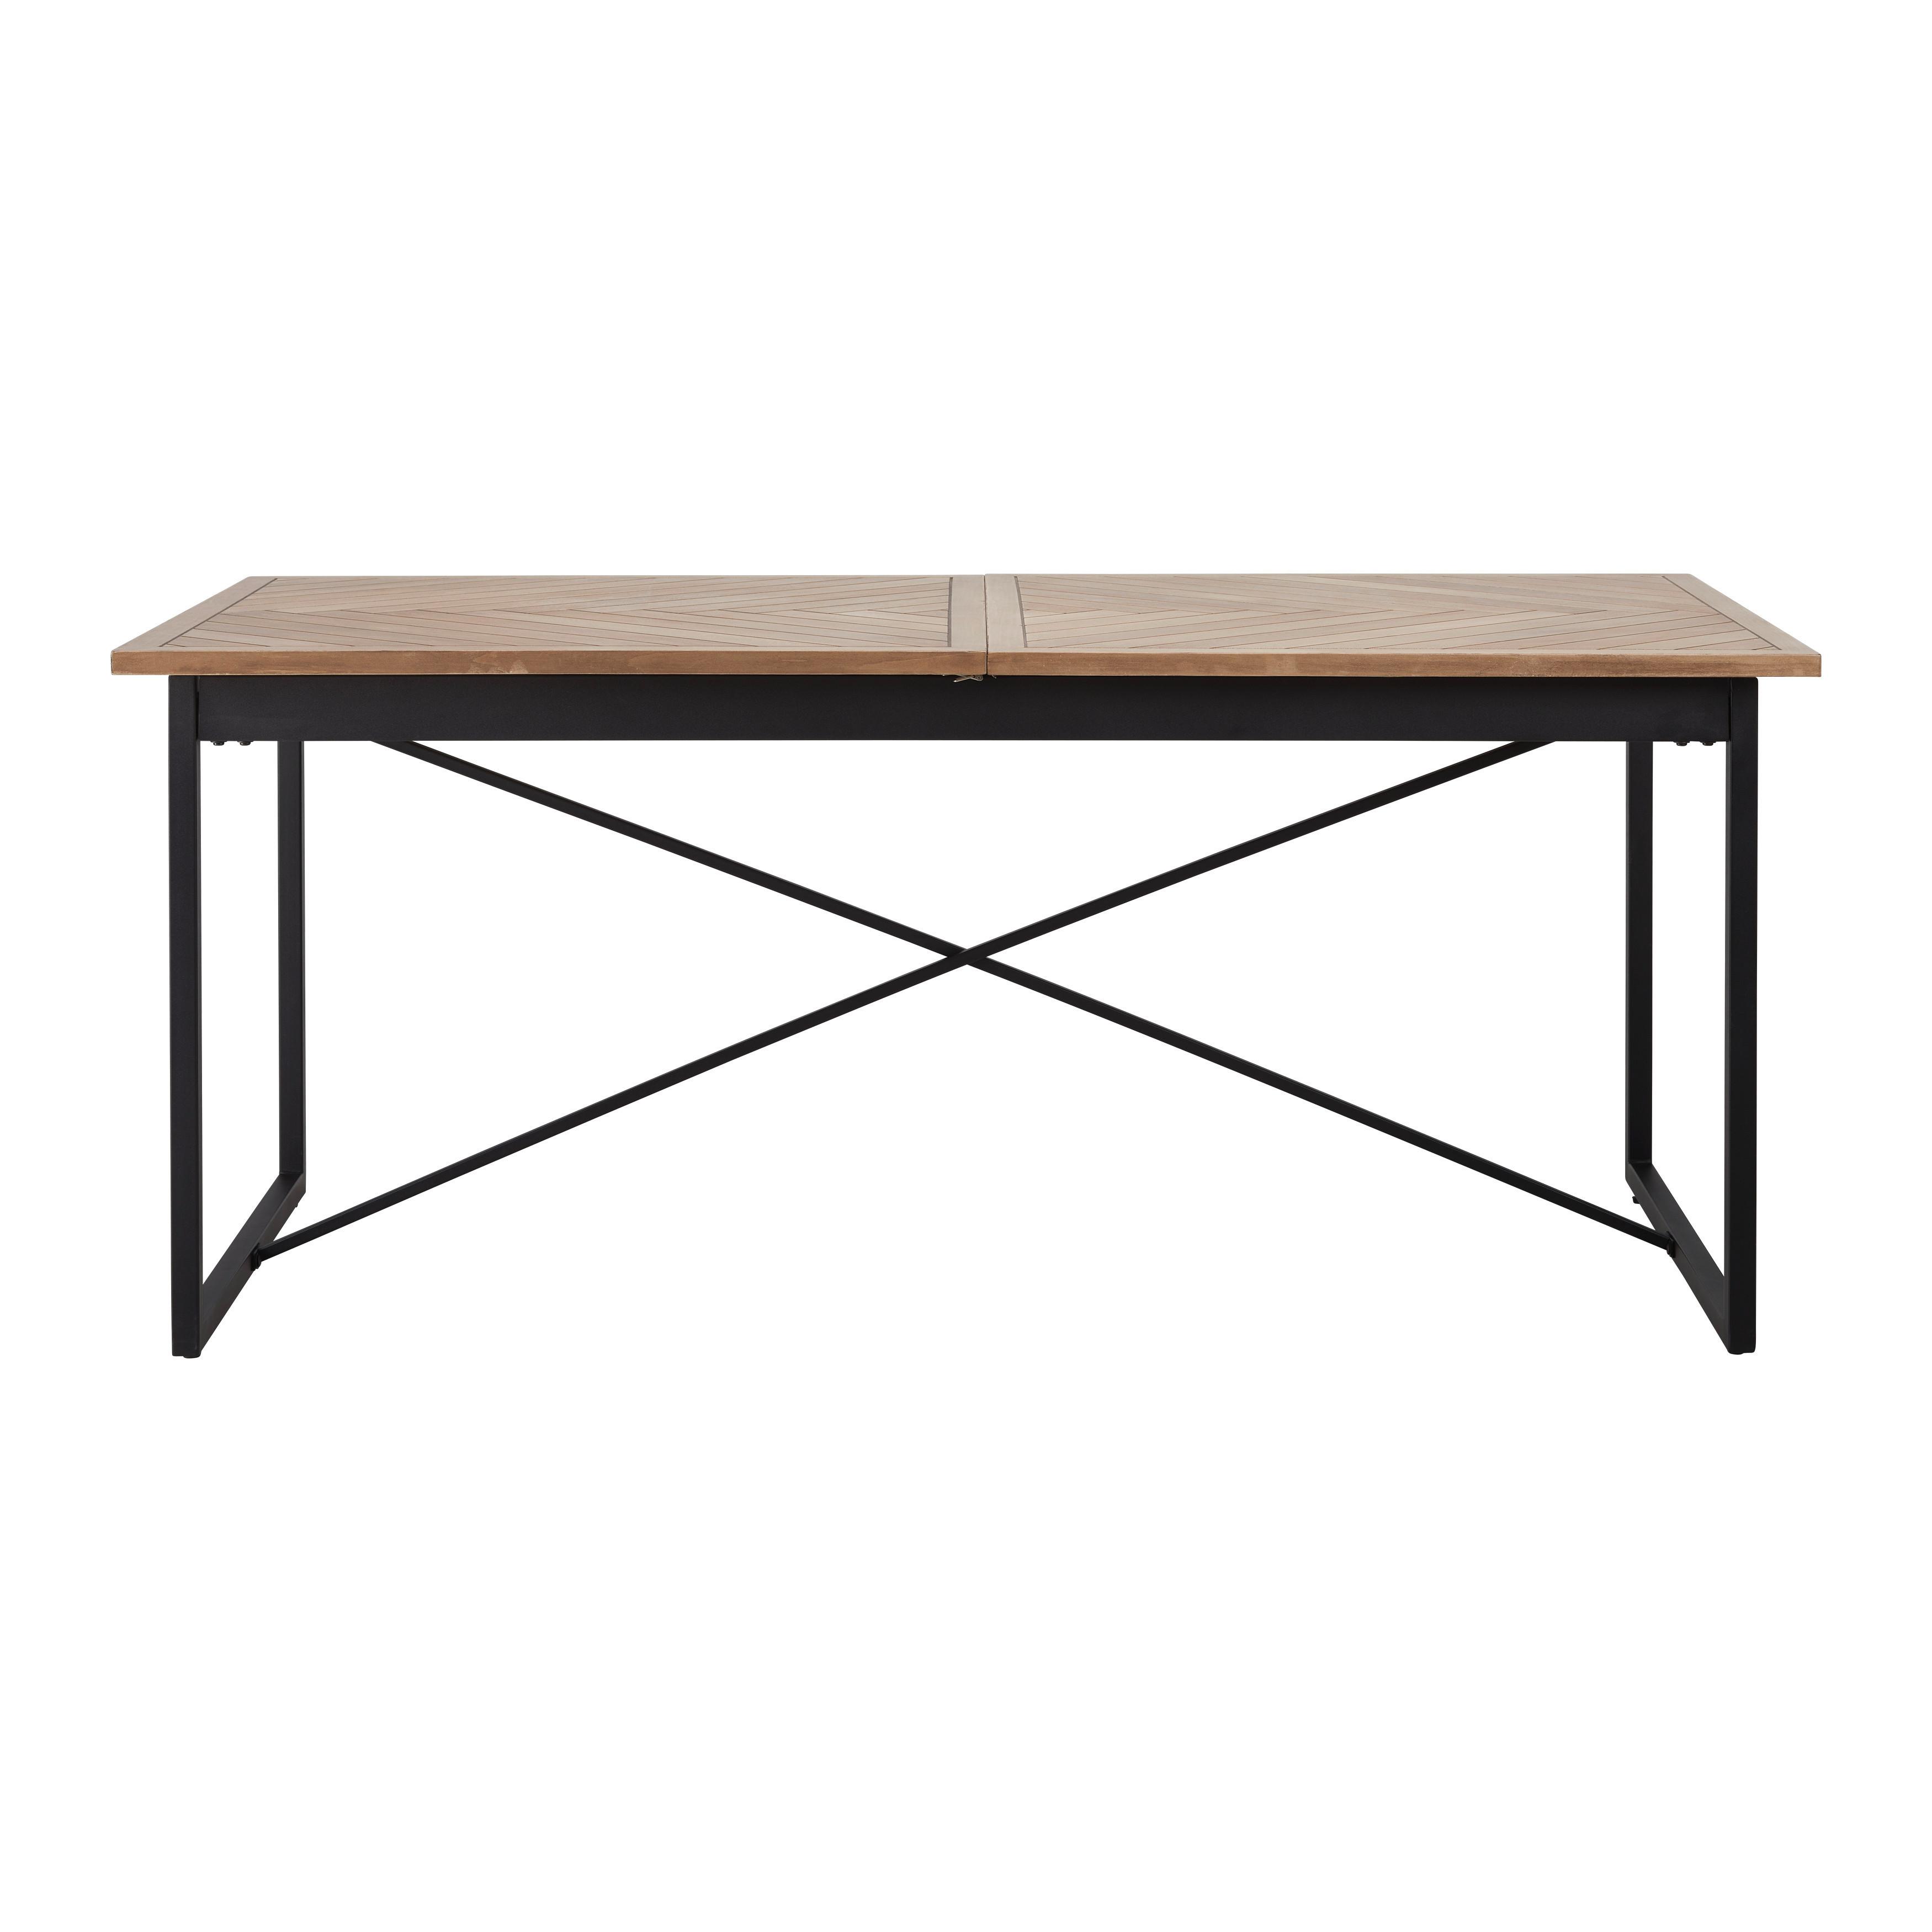 Rozkládací Jídelní Stůl Catalina 180-240 Cm, Dub - černá/barvy dubu, Moderní, kov/dřevo (180-240/90/76cm) - Livetastic